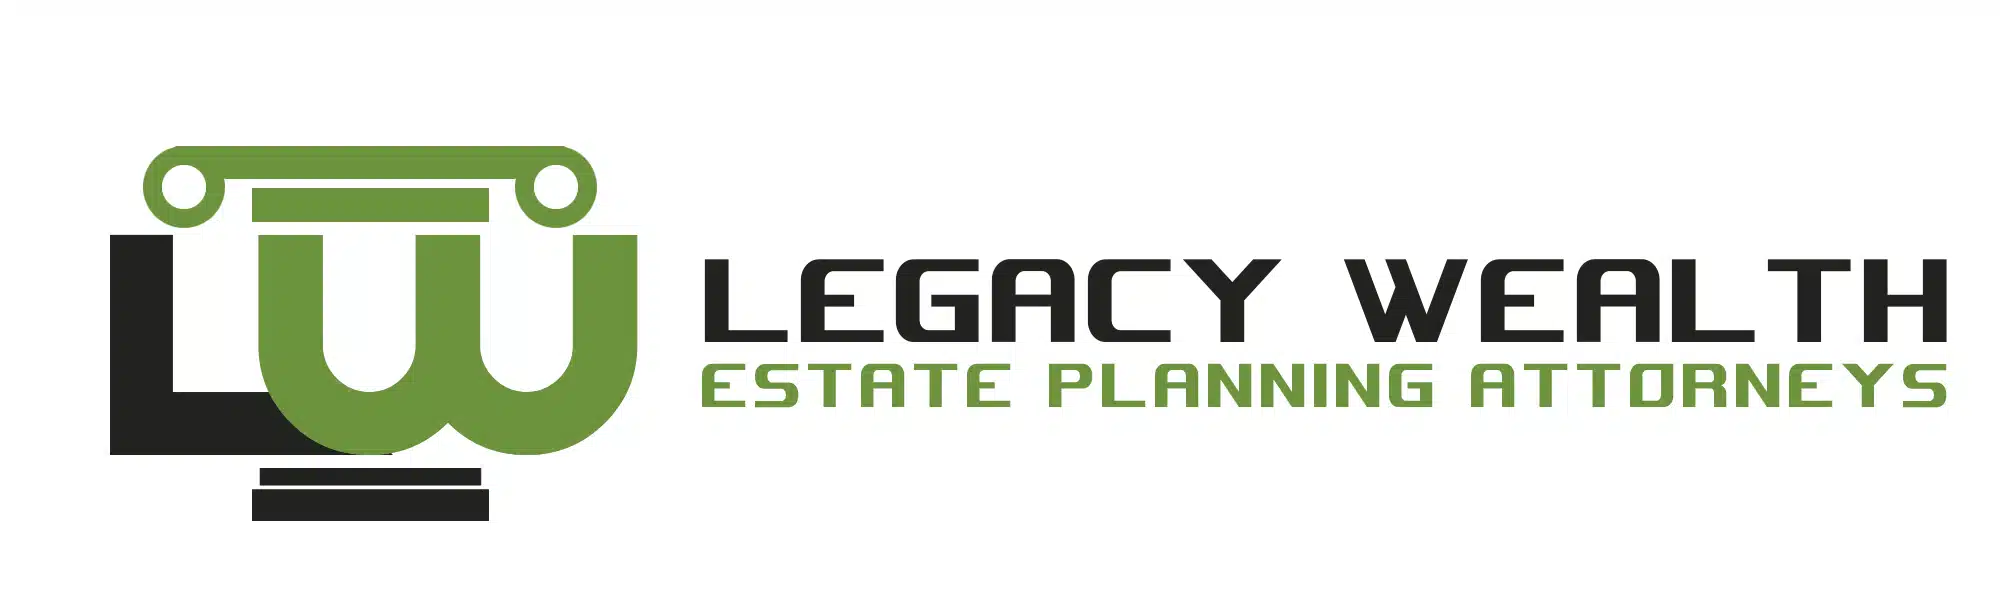 Legacy-Wealth-9.webp